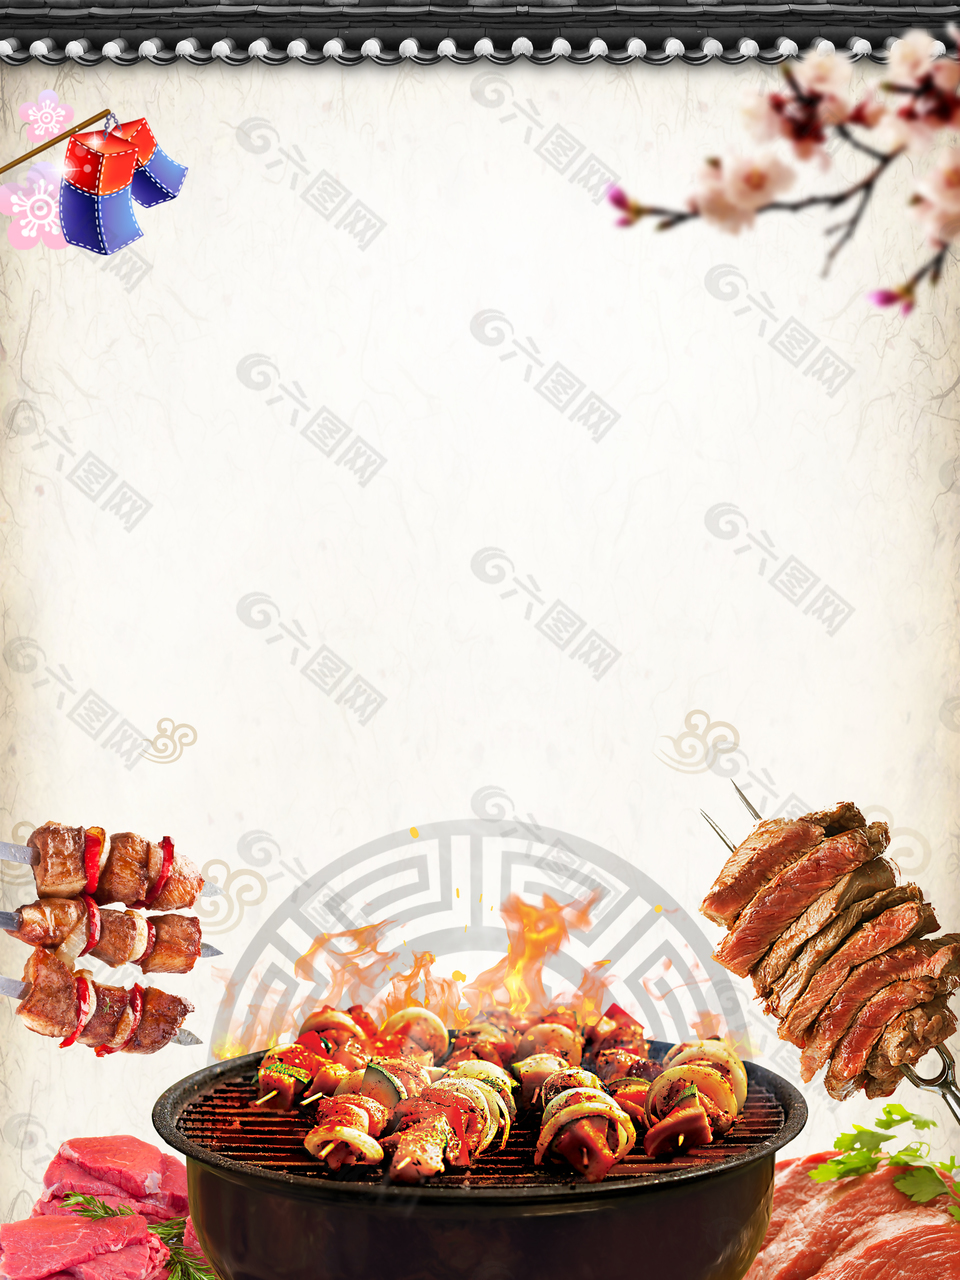 简约韩式烧烤烤肉美食背景